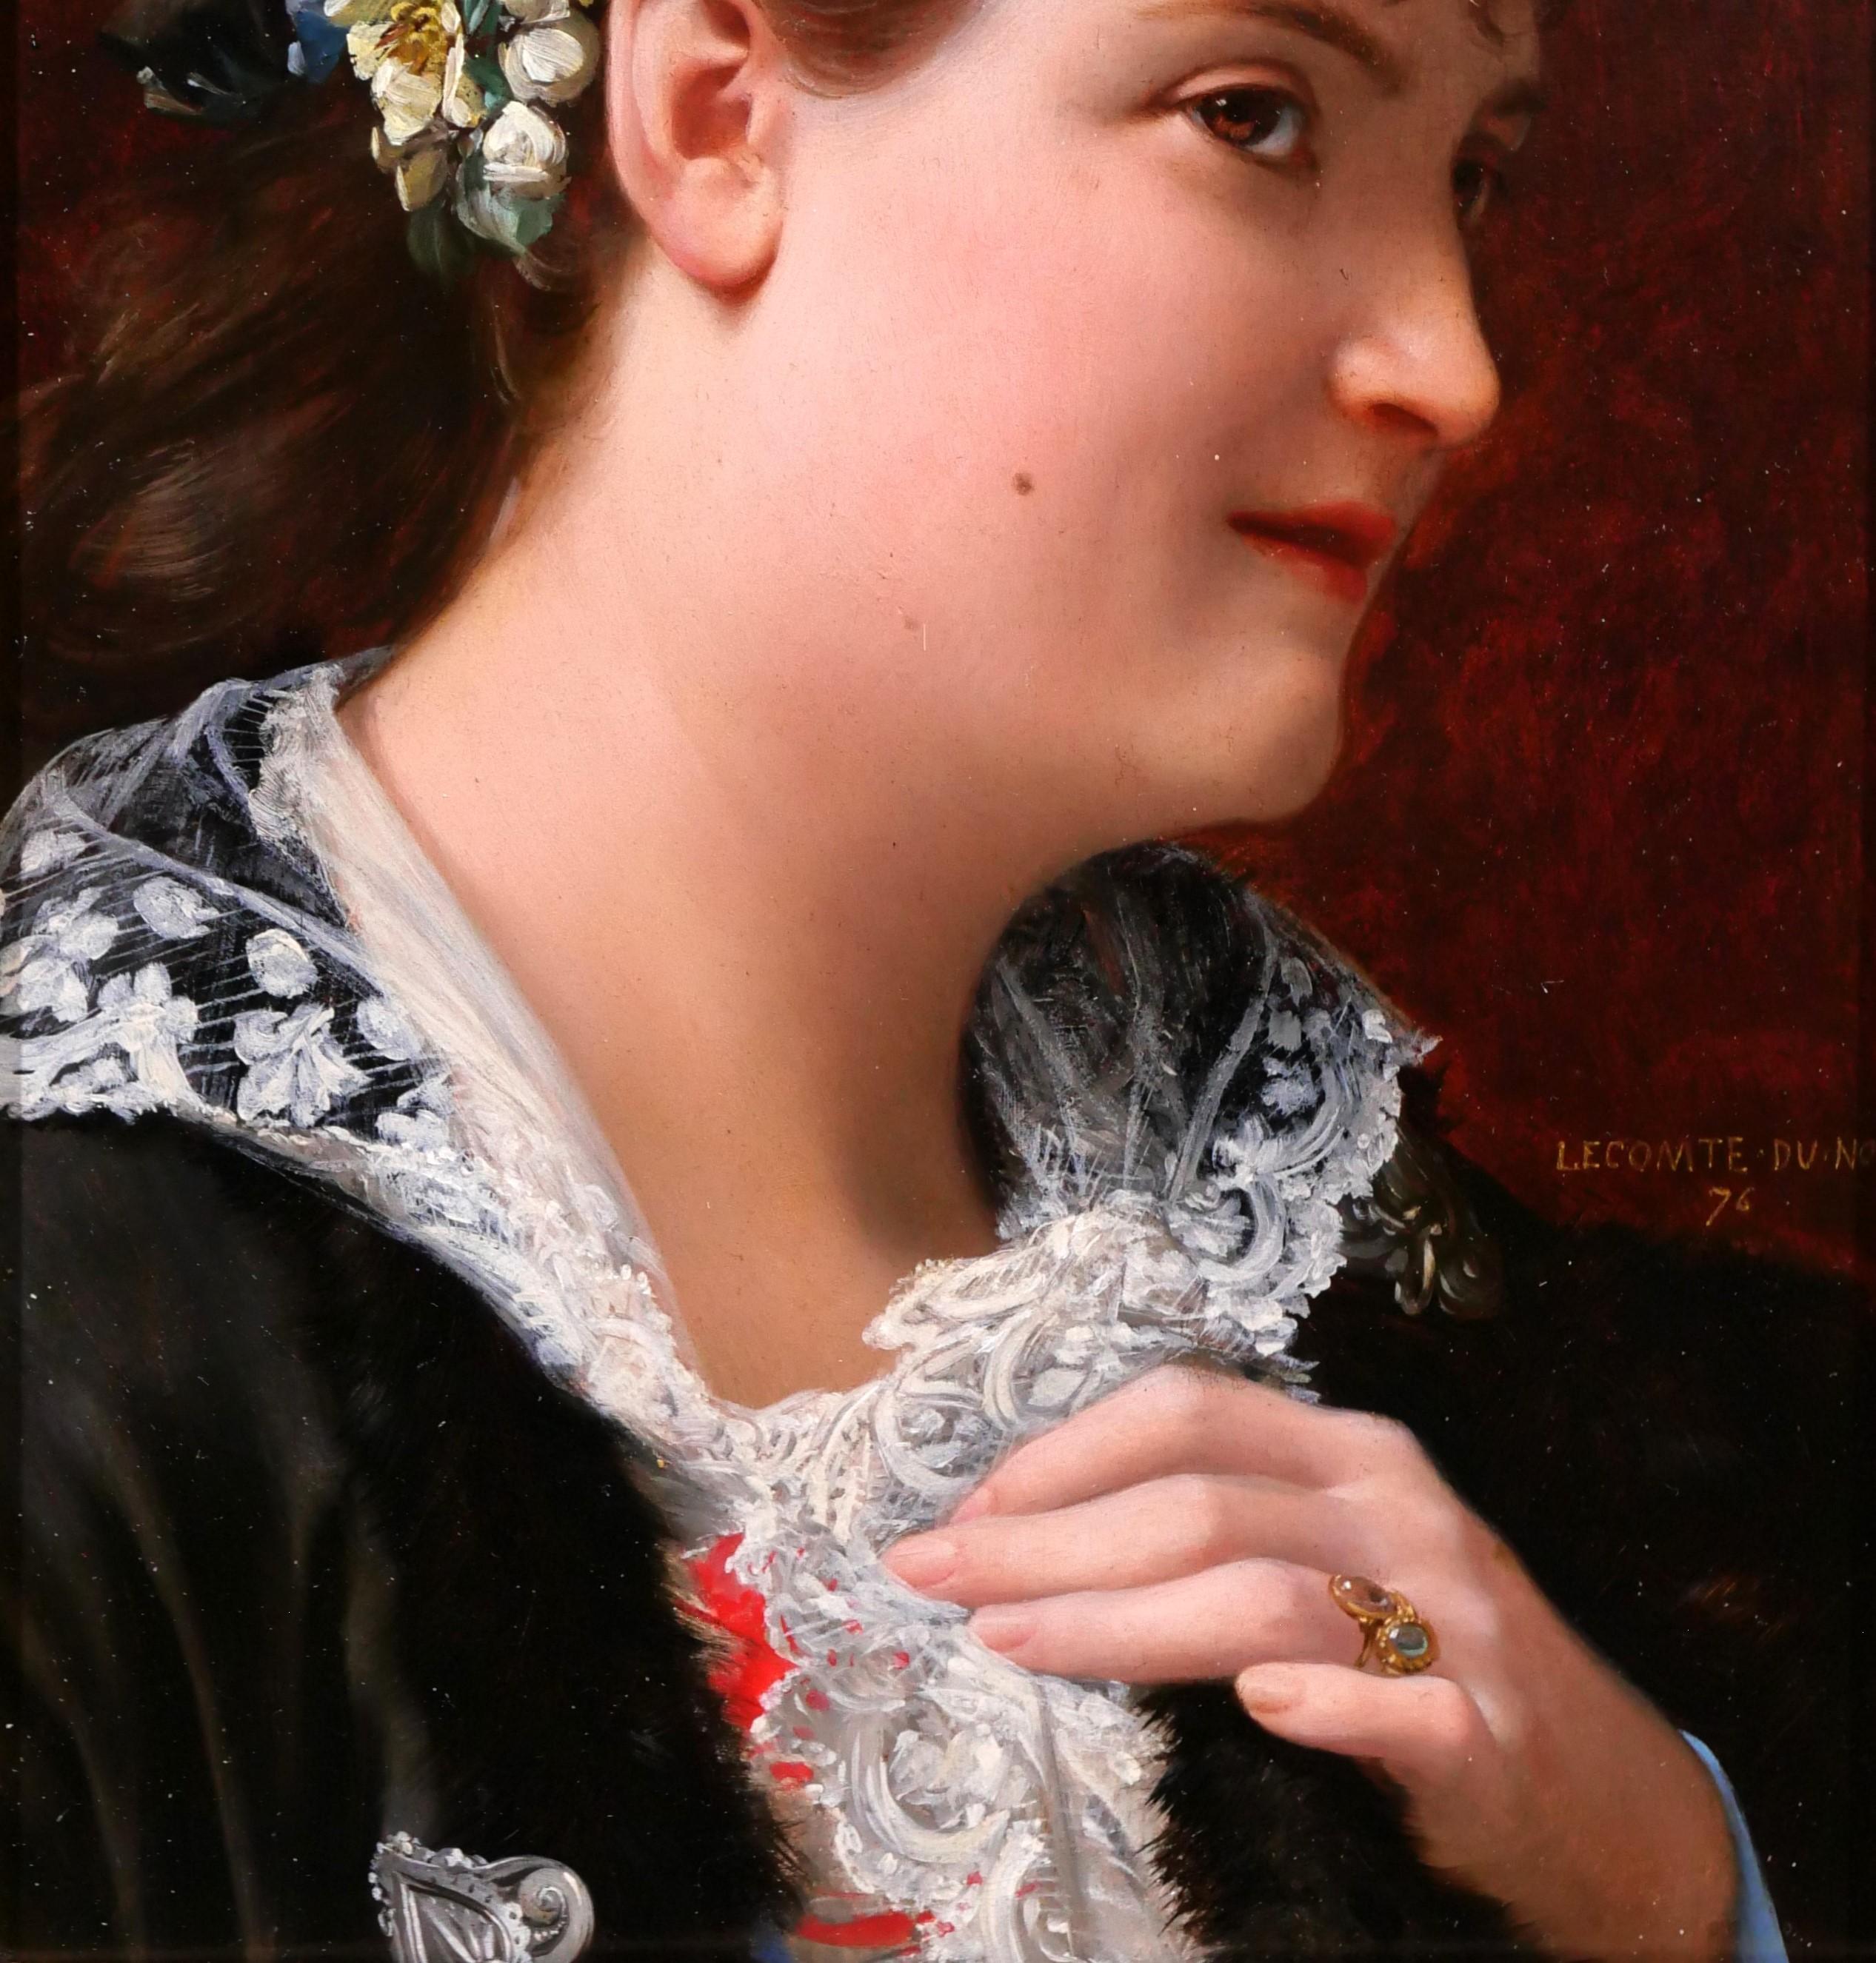 Jean Jules Antoine LECOMTE DU NOÜY
Paris, 1842 - Paris, 1923
Portrait of a woman, Tasie
Painting, oil on wood
Signed, titled and dated 1876: 